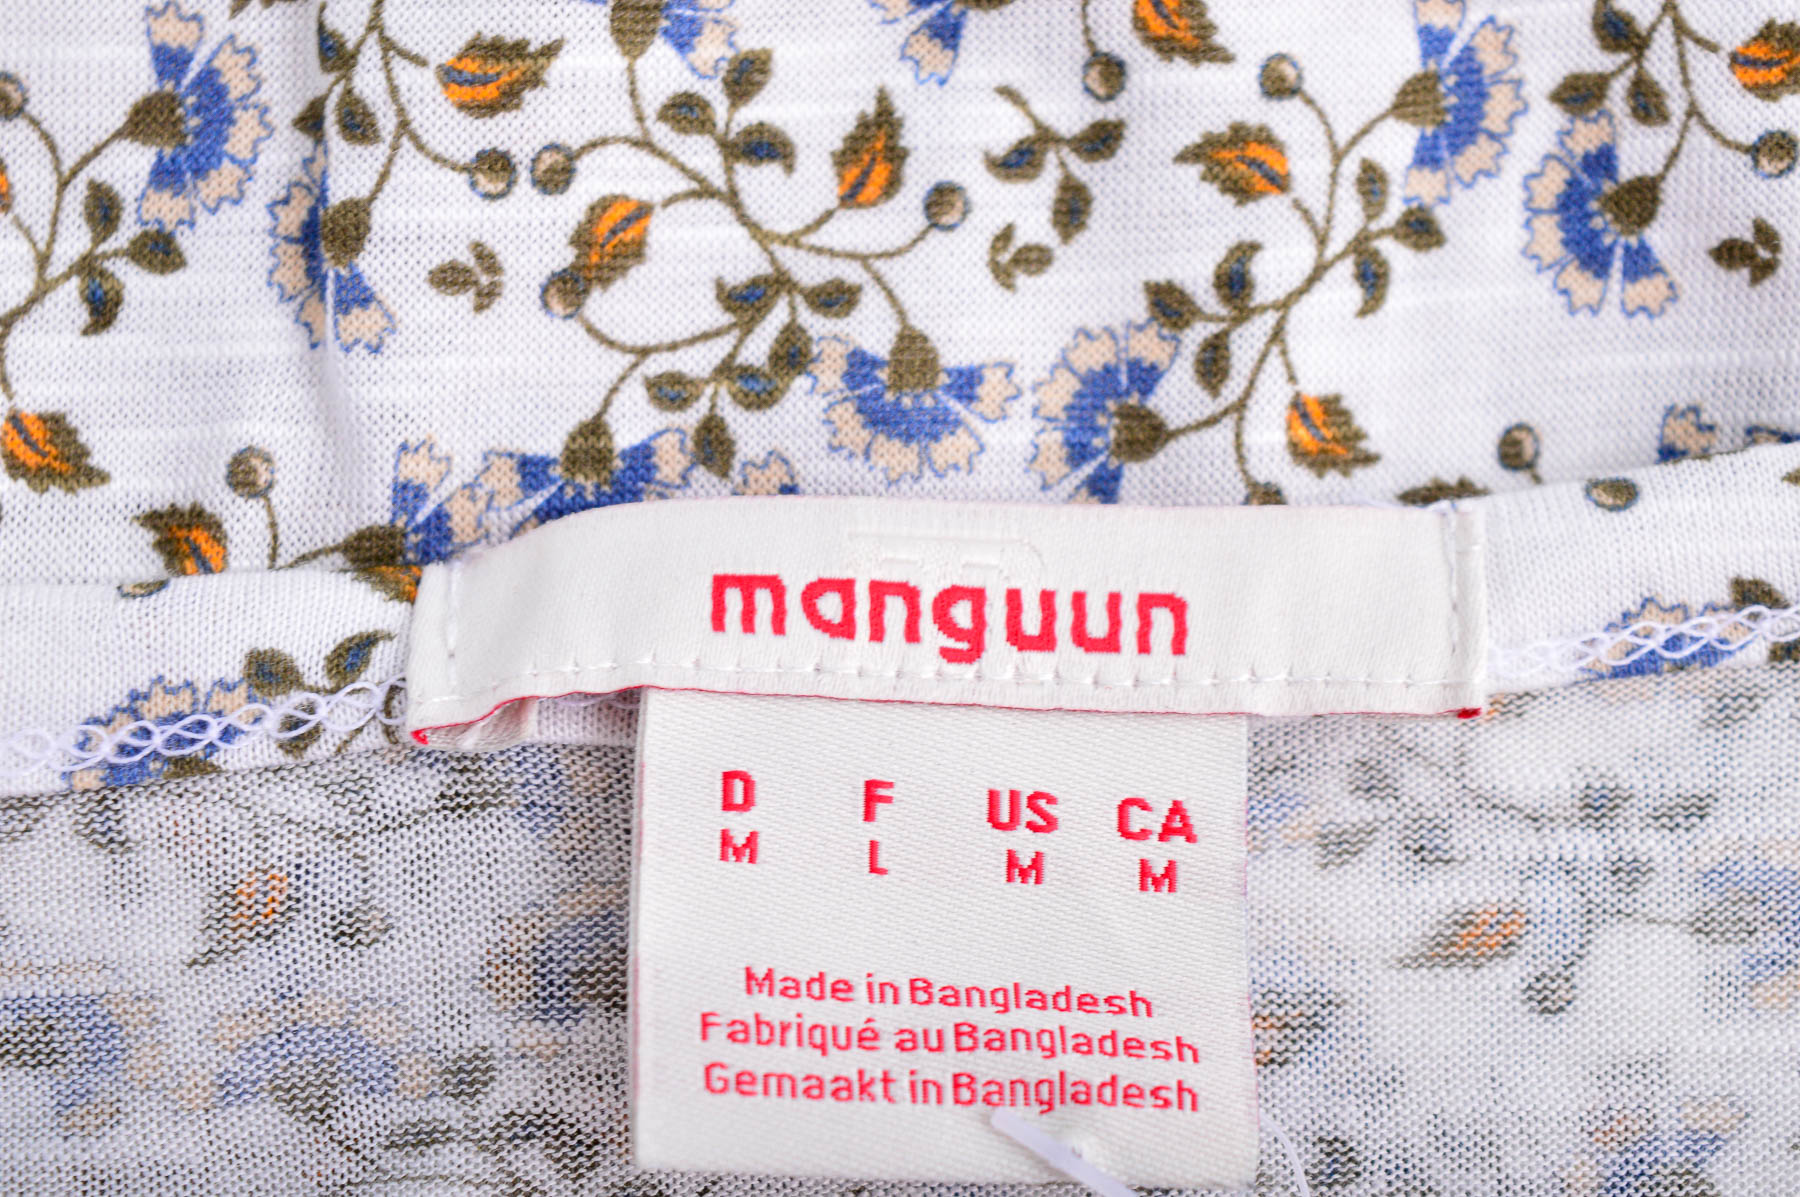 Γυναικεία μπλούζα - Manguun - 2